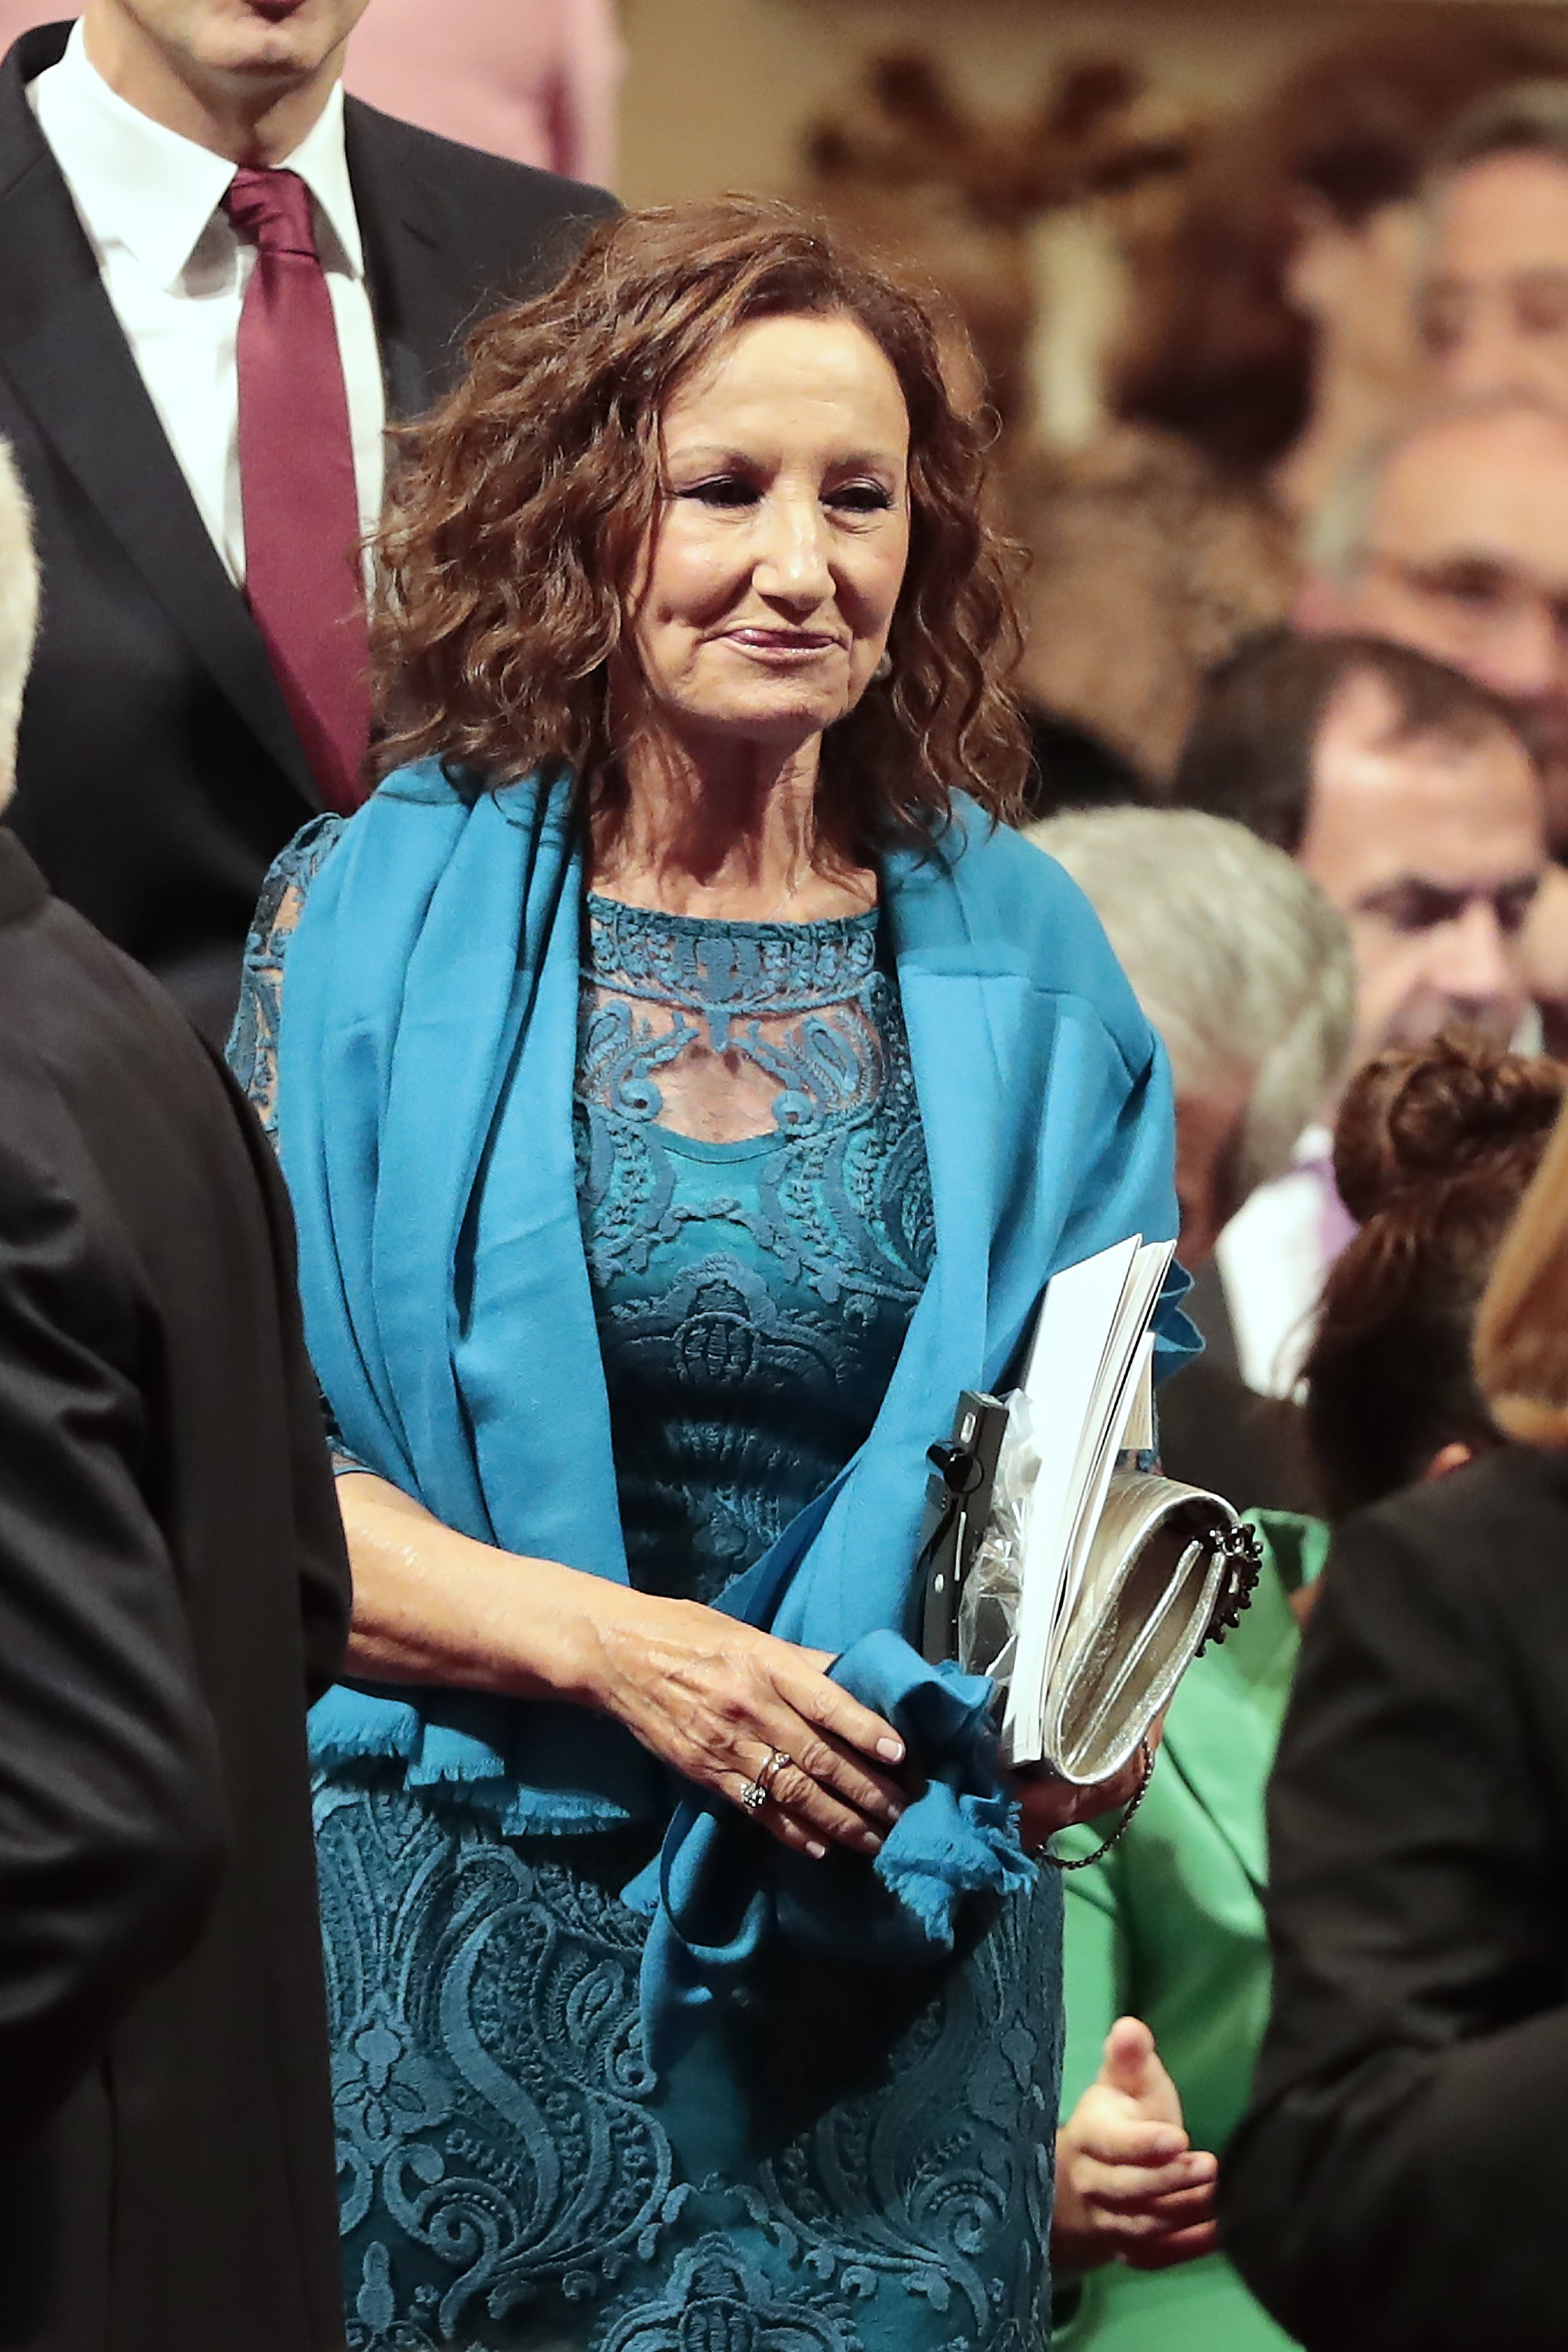 Paloma Rocasolano en los Premios Princesa de Asturias 2018 en el Teatro Campoamor, Oviedo, España. | Imagen: Getty Images/GlobalImagesUkraine